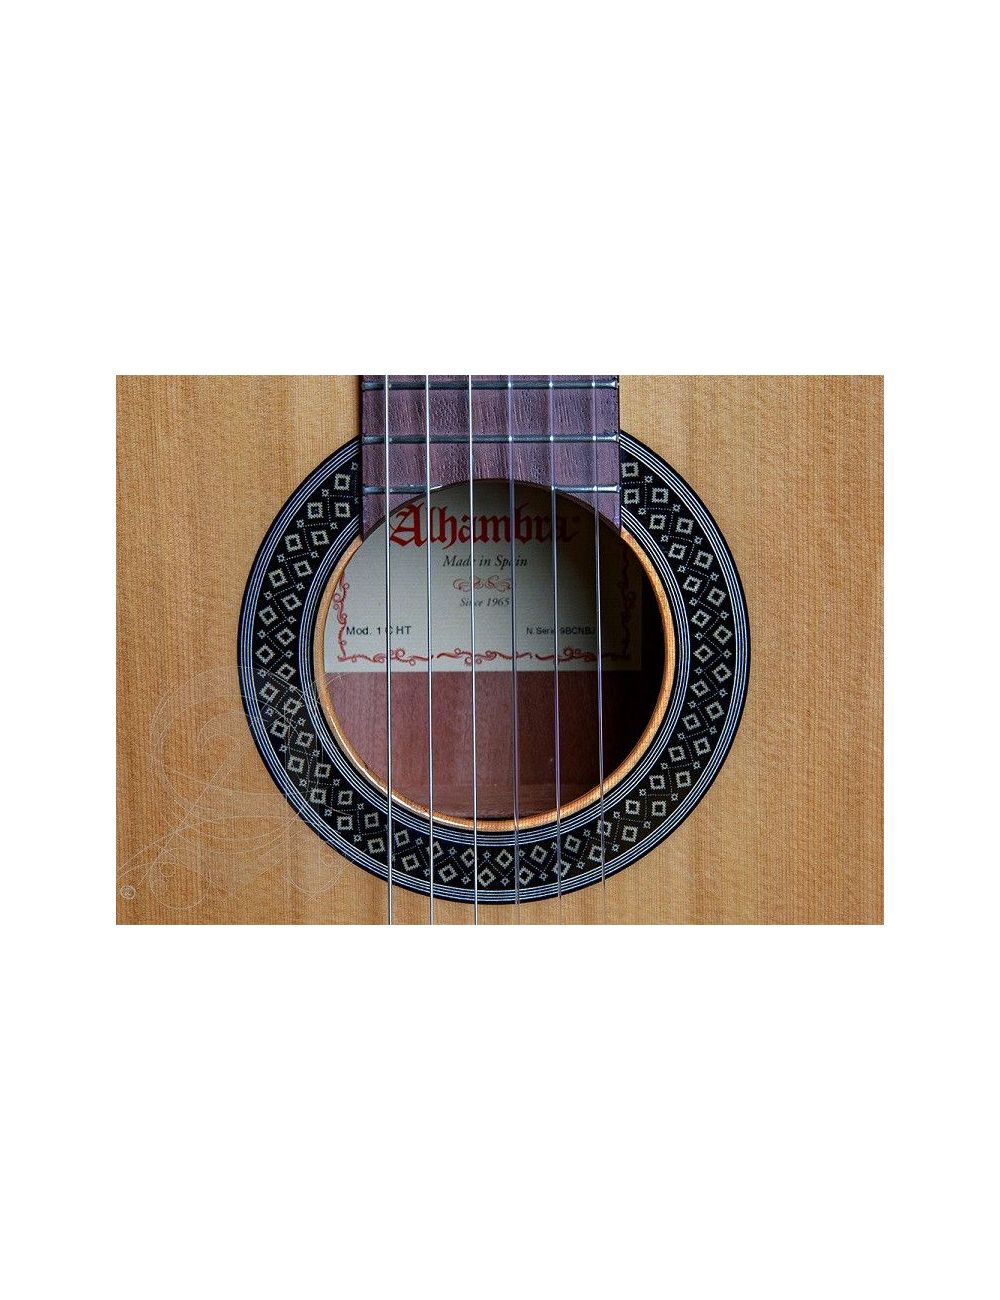 Alhambra 1C HT 1/2 Hybrid Terra Guitarra Clásica